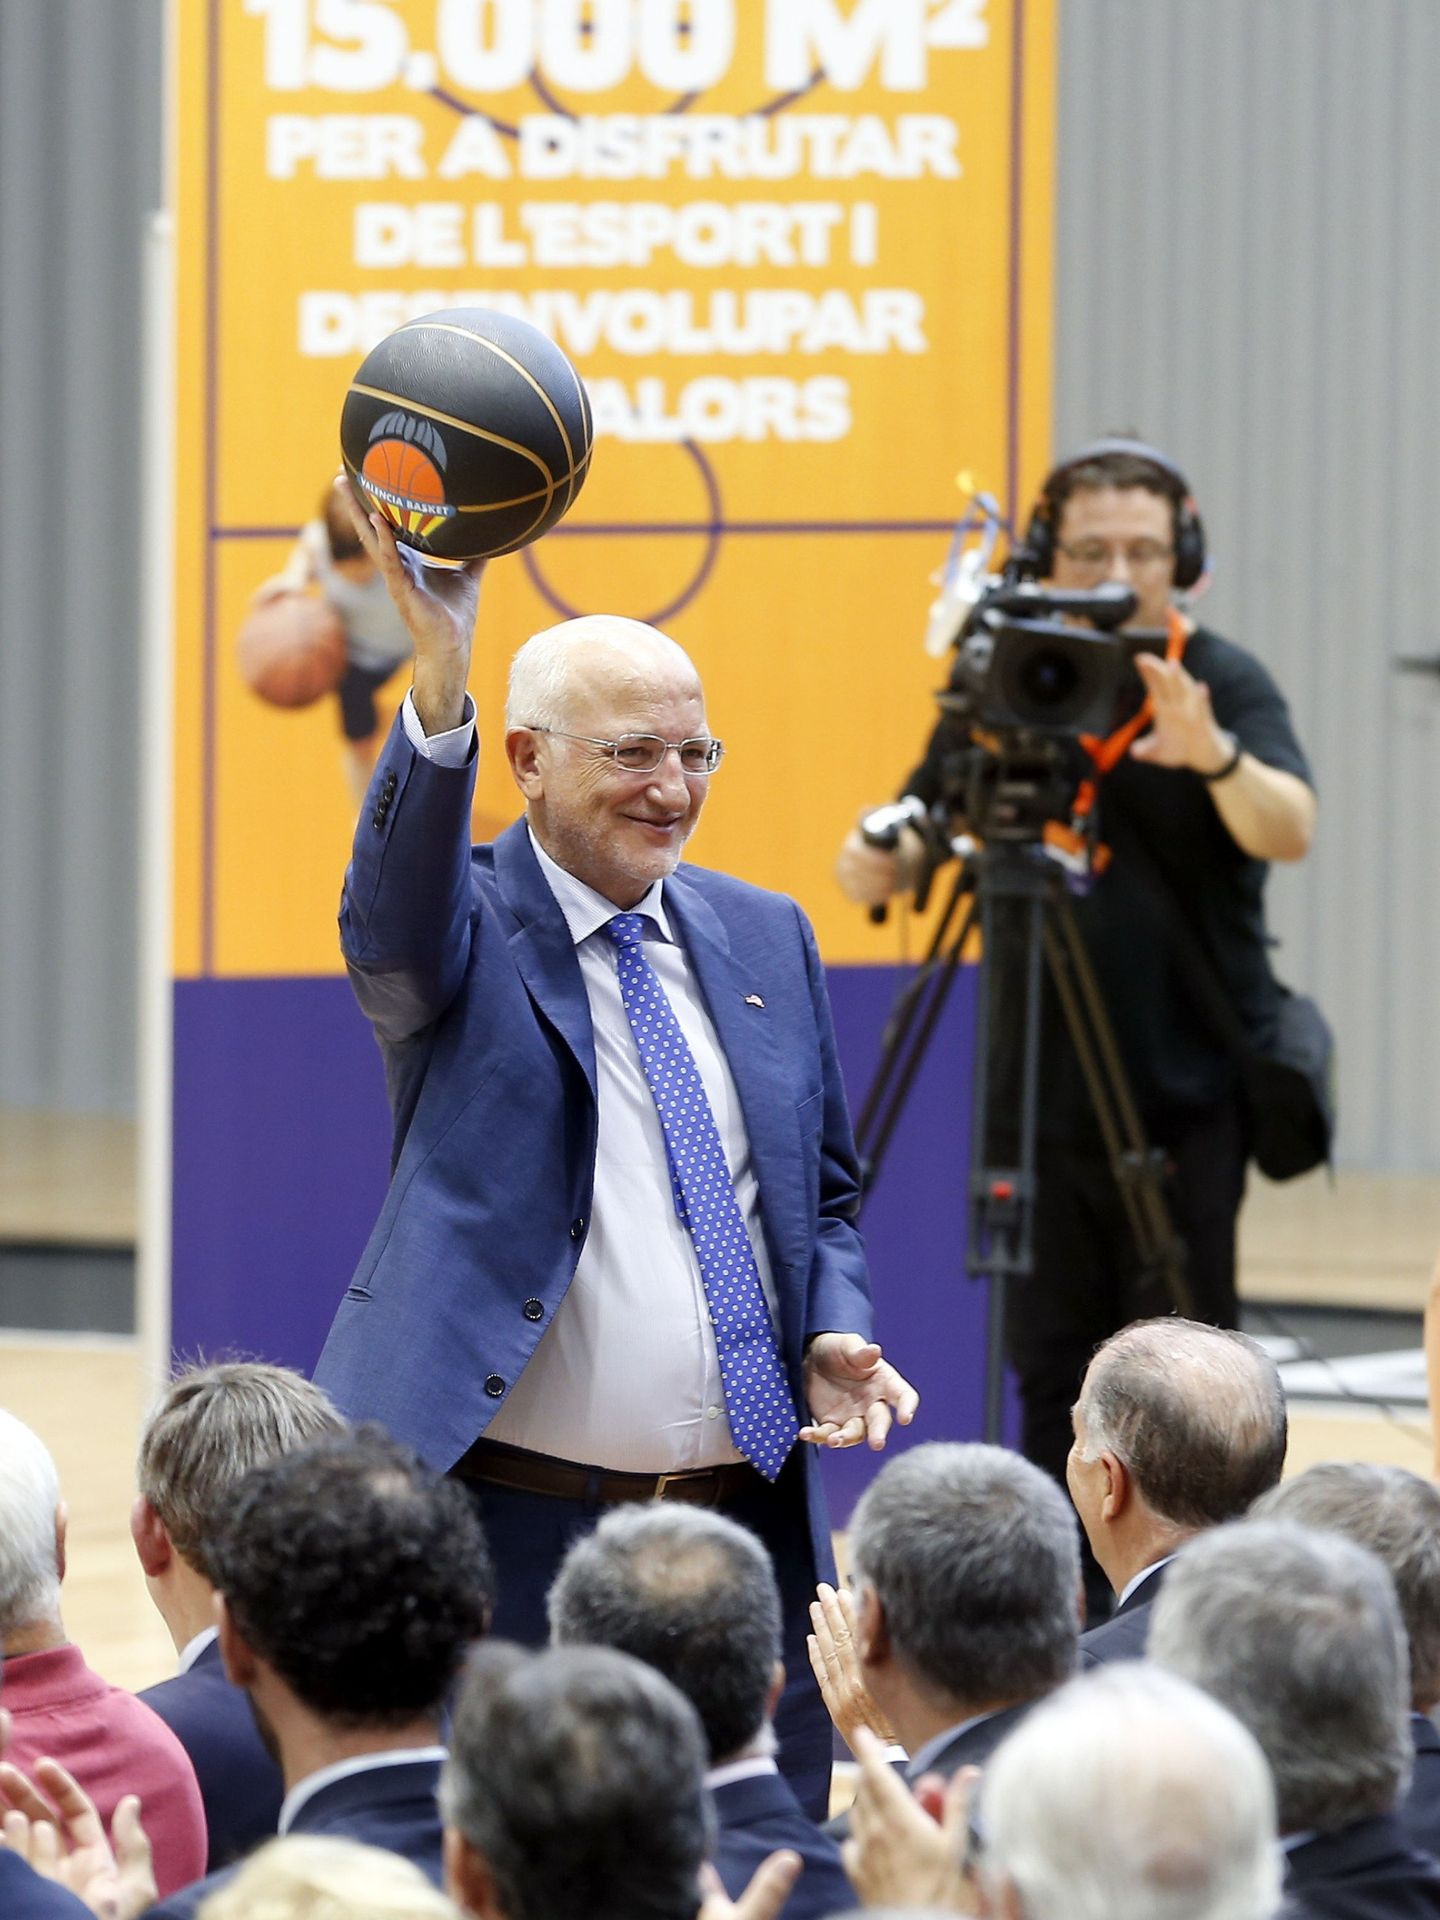 Juan Roig, saluda con un balón a los asitentes a la inauguración de L'Alqueria del Basket. (EFE)